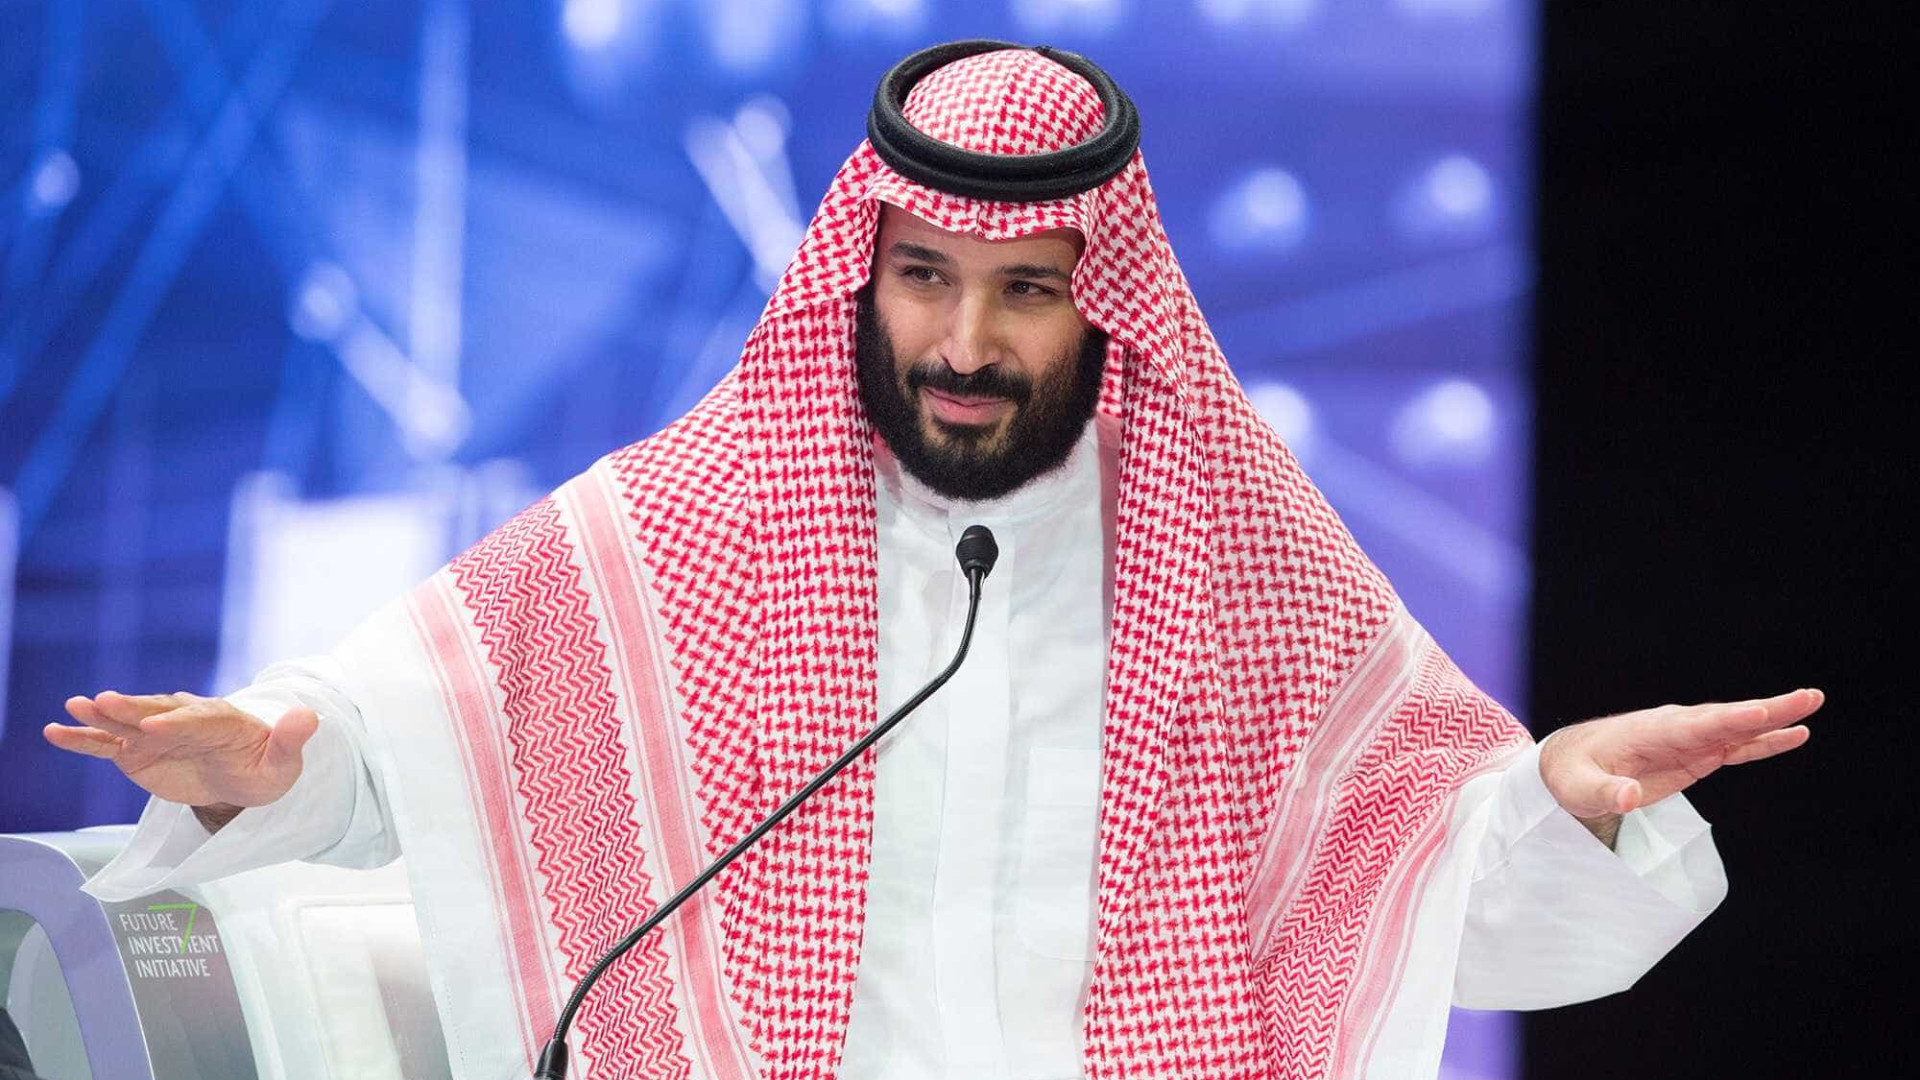 Gravação liga príncipe herdeiro saudita a morte de jornalista, diz NYT